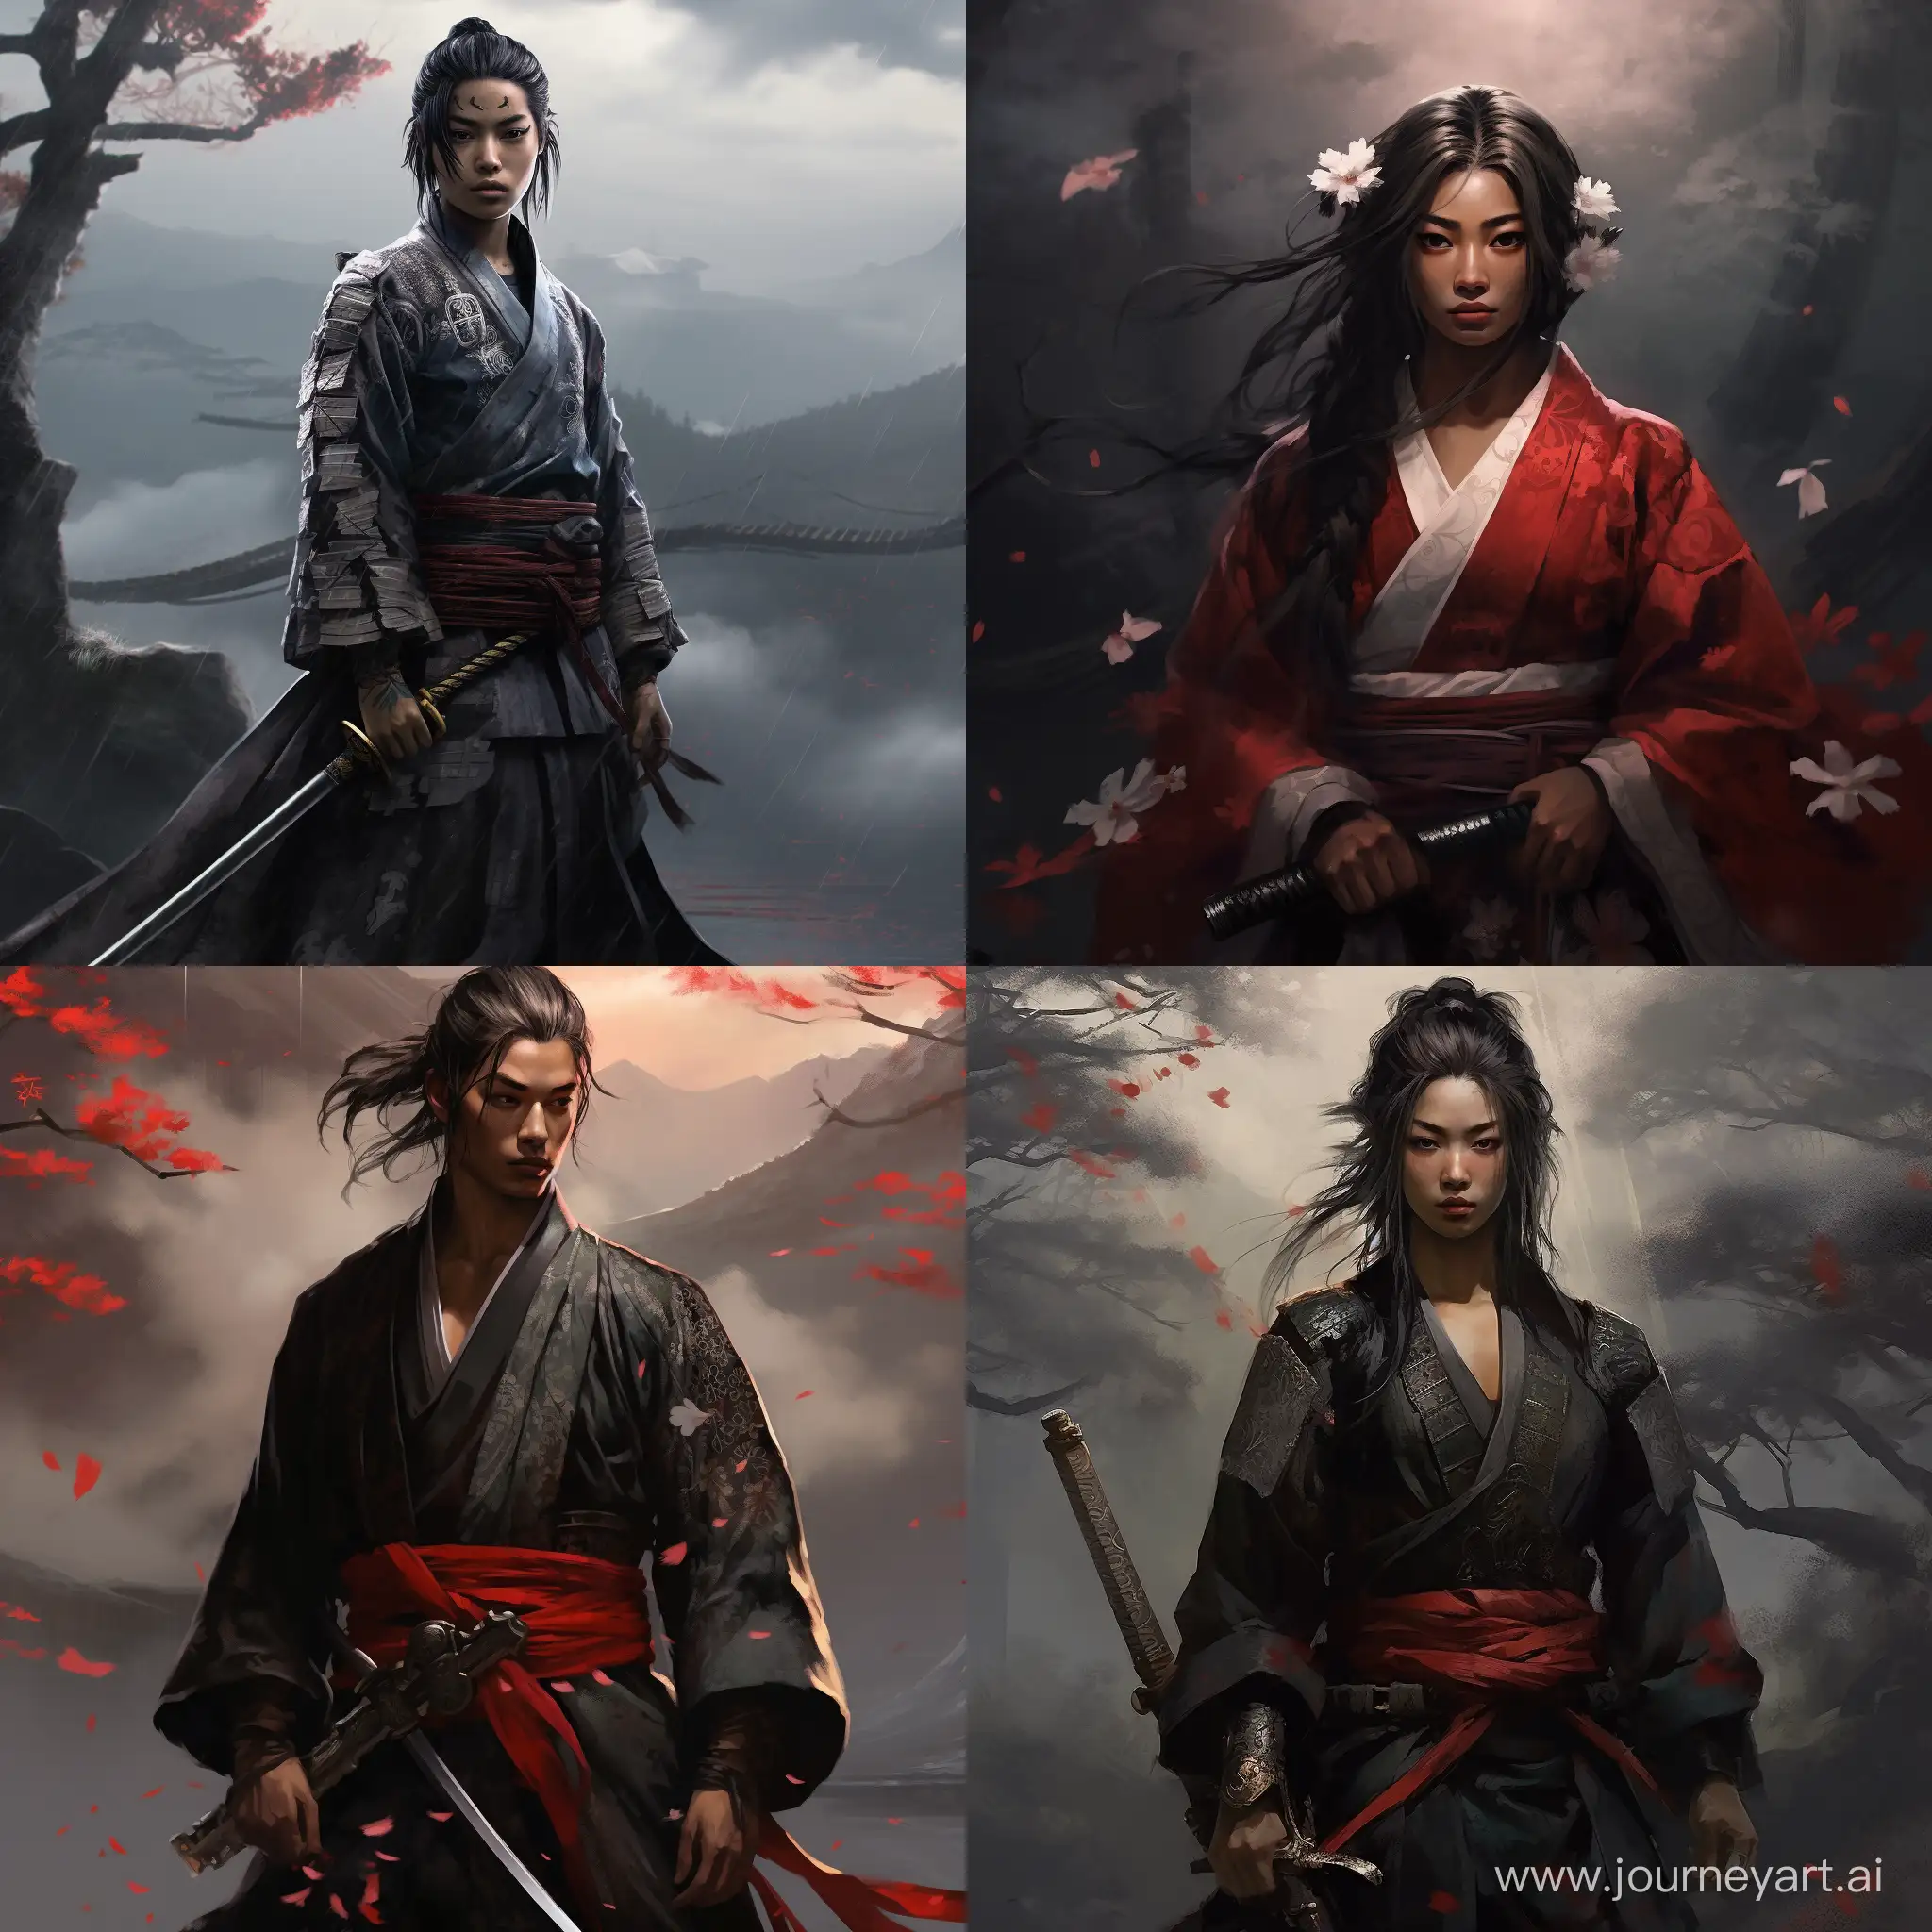 Young fantasy samurai